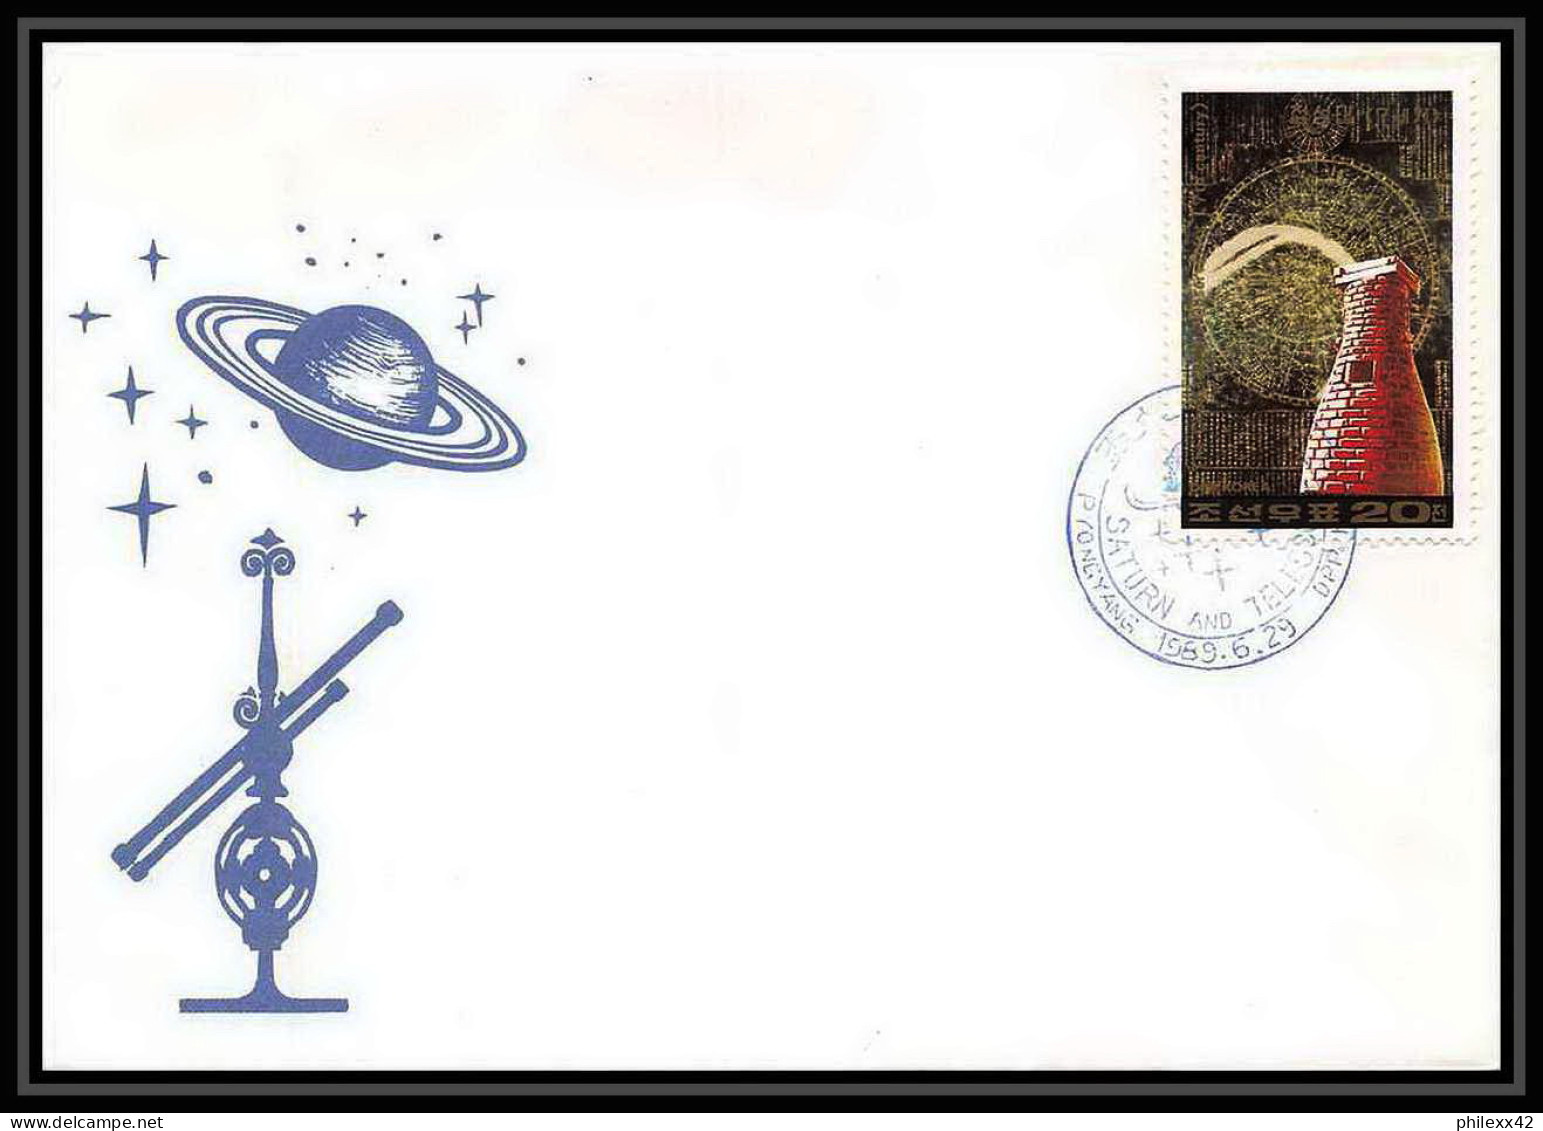 9759/ Espace (space) Lettre (cover) 29/6/1989 Planet Saturn Telescopes Corée (korea) - Azië